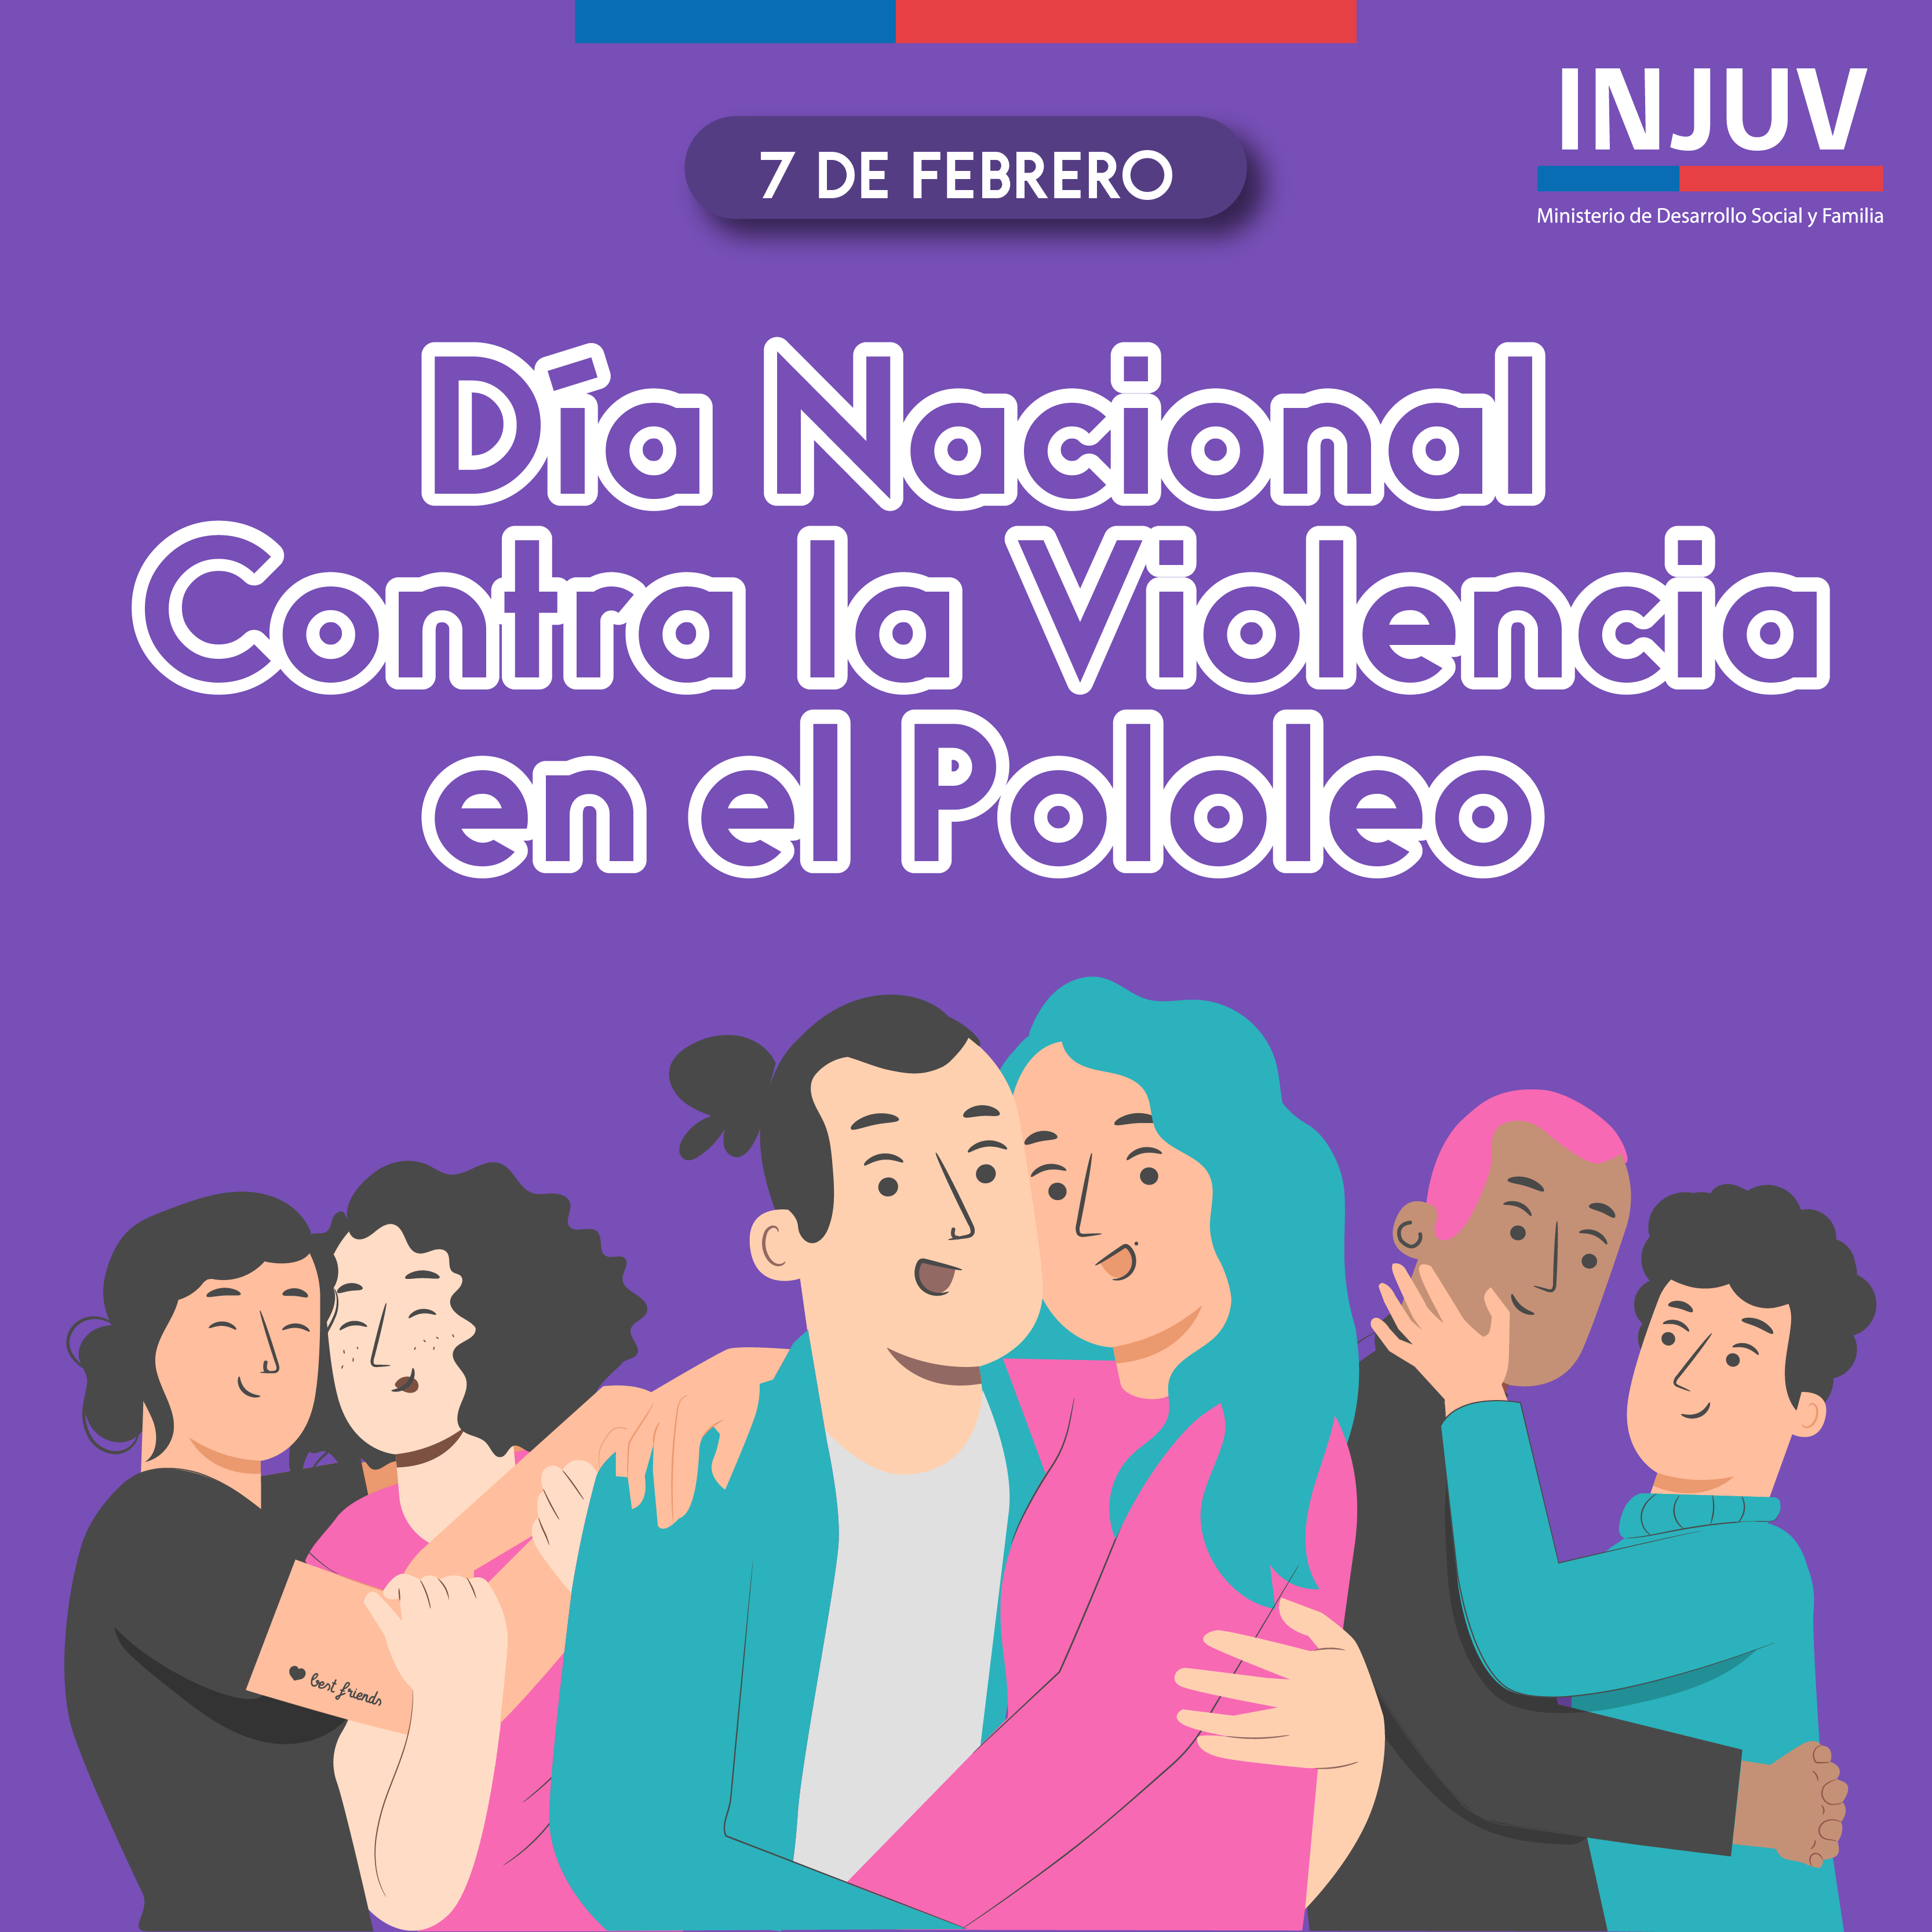 Día Nacional contra la violencia en el pololeo